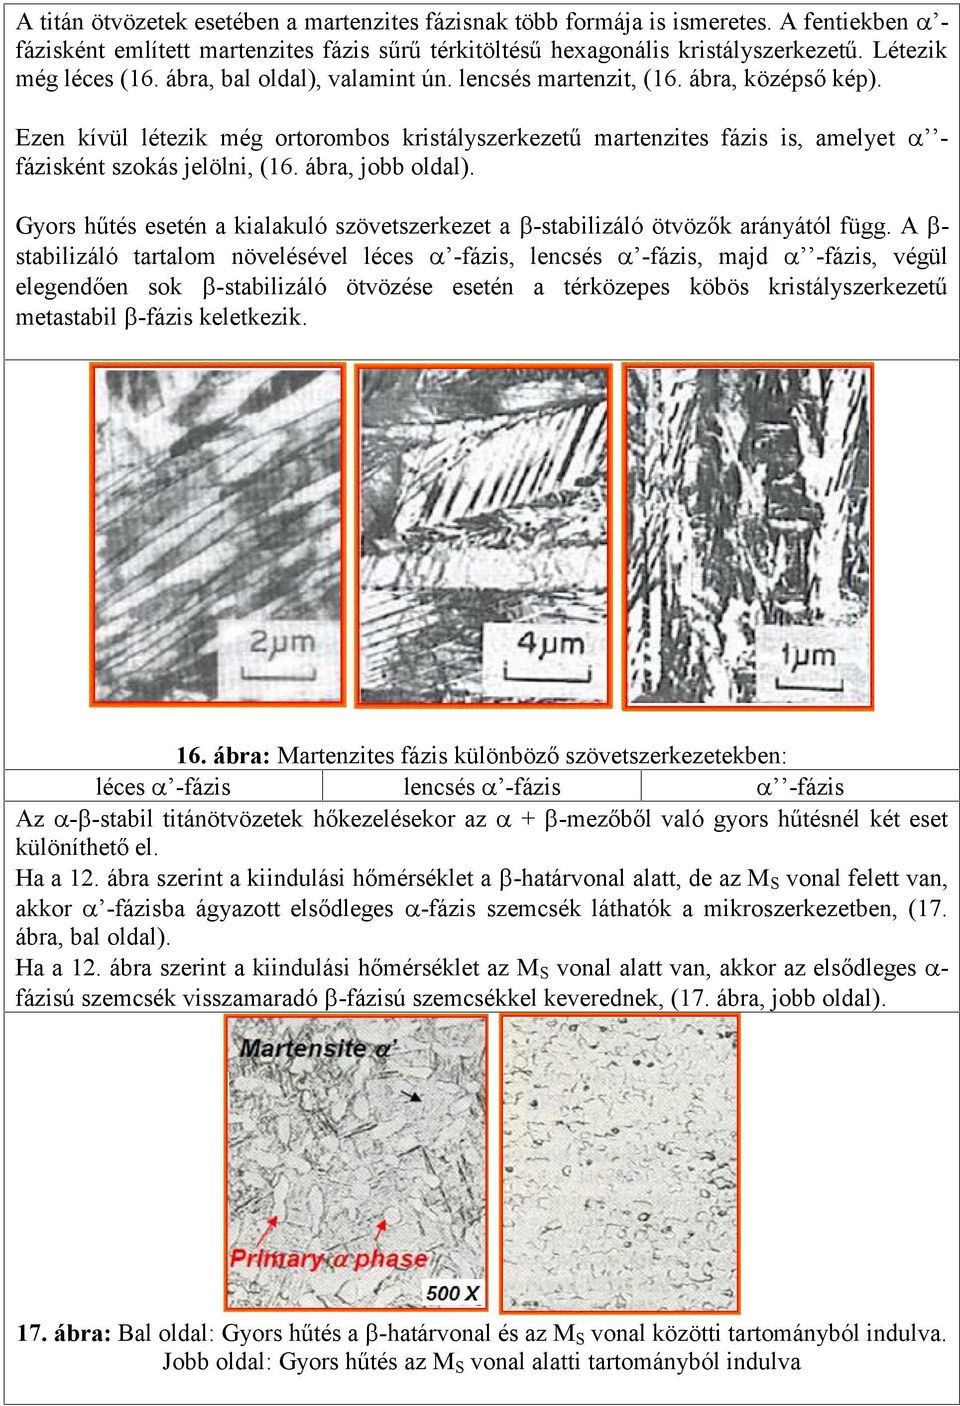 Ezen kívül létezik még ortorombos kristályszerkezetű martenzites fázis is, amelyet - fázisként szokás jelölni, (16. ábra, jobb oldal).